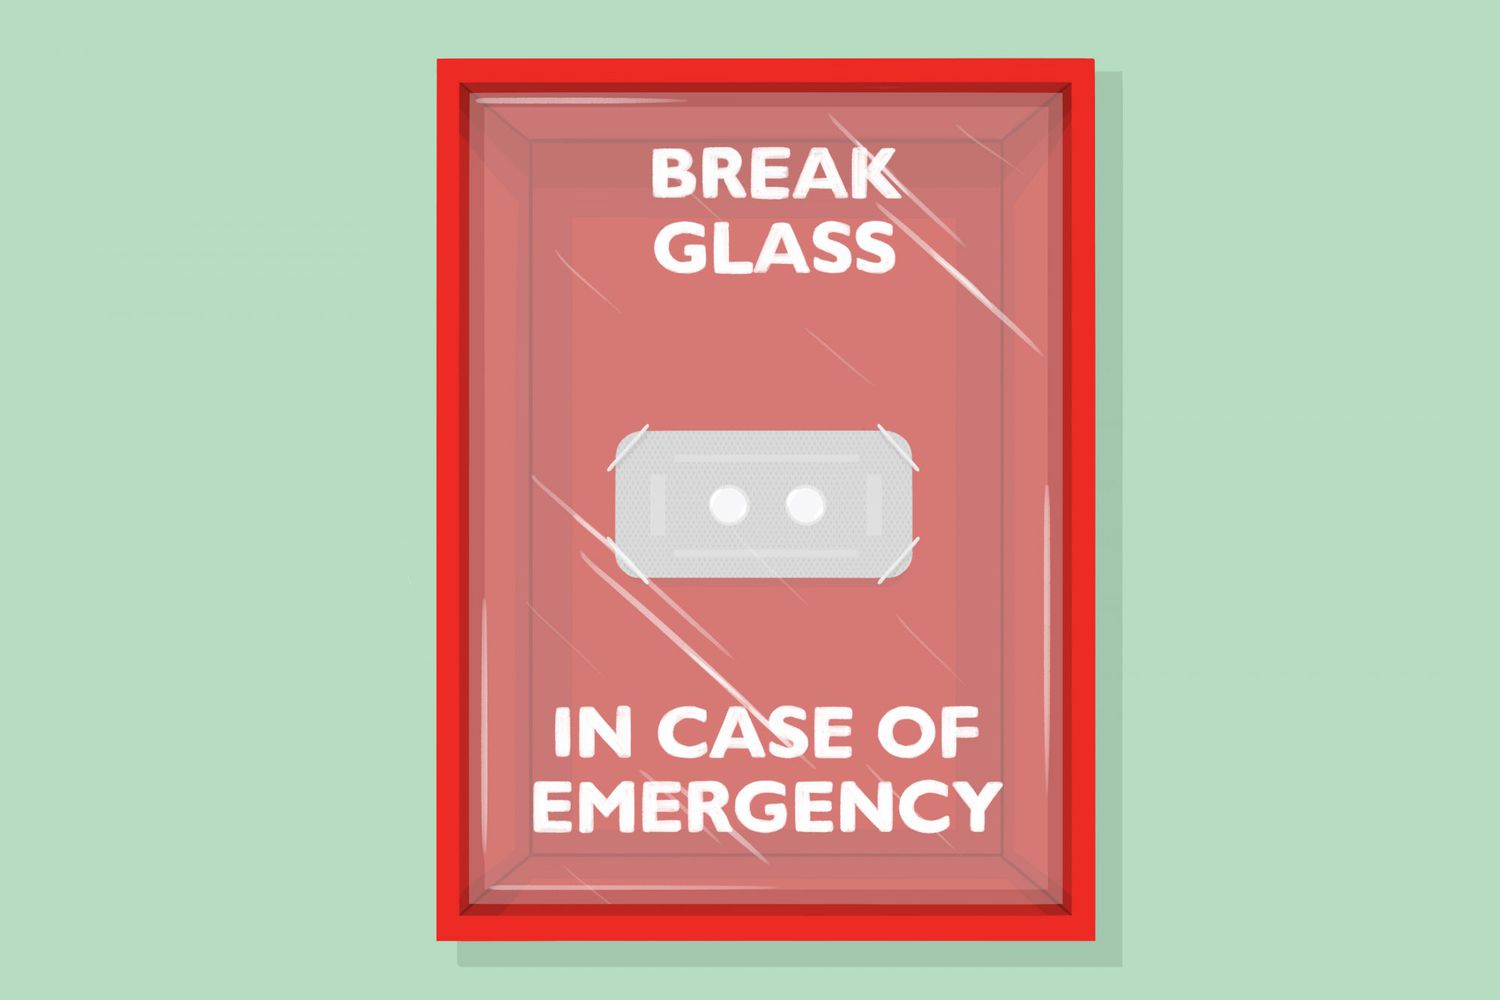 "Break Glass In Case of Emergency" box with pills inside